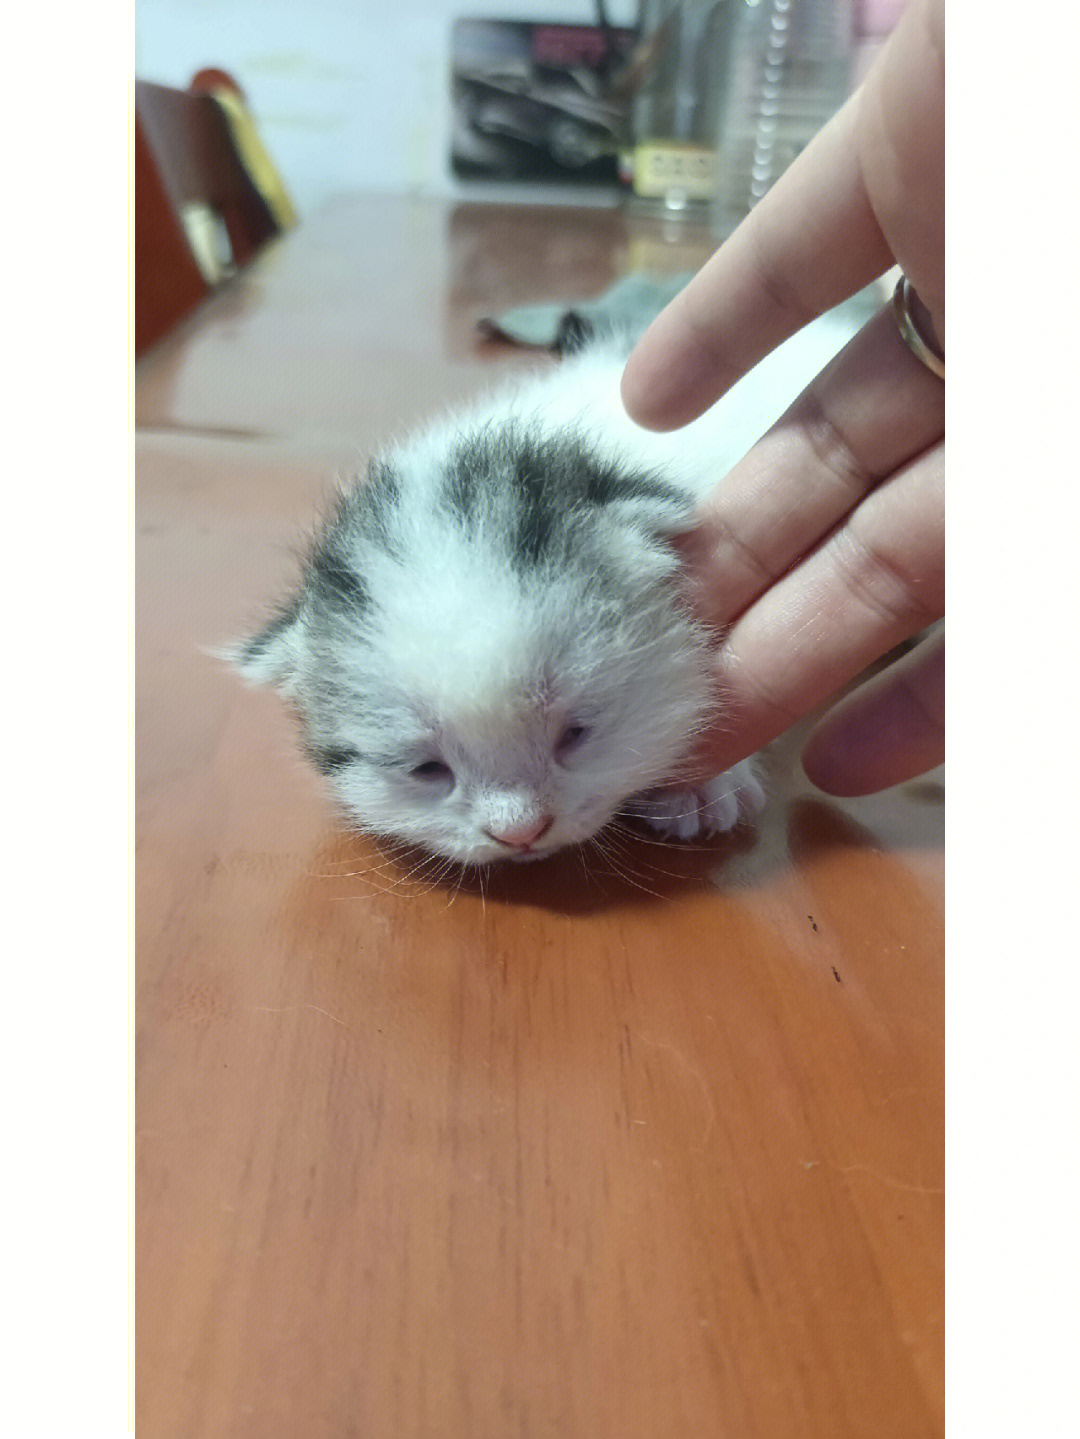 出生13天的小奶猫,还没有完全睁开眼睛,只睁开一点点,妥妥的小三角眼